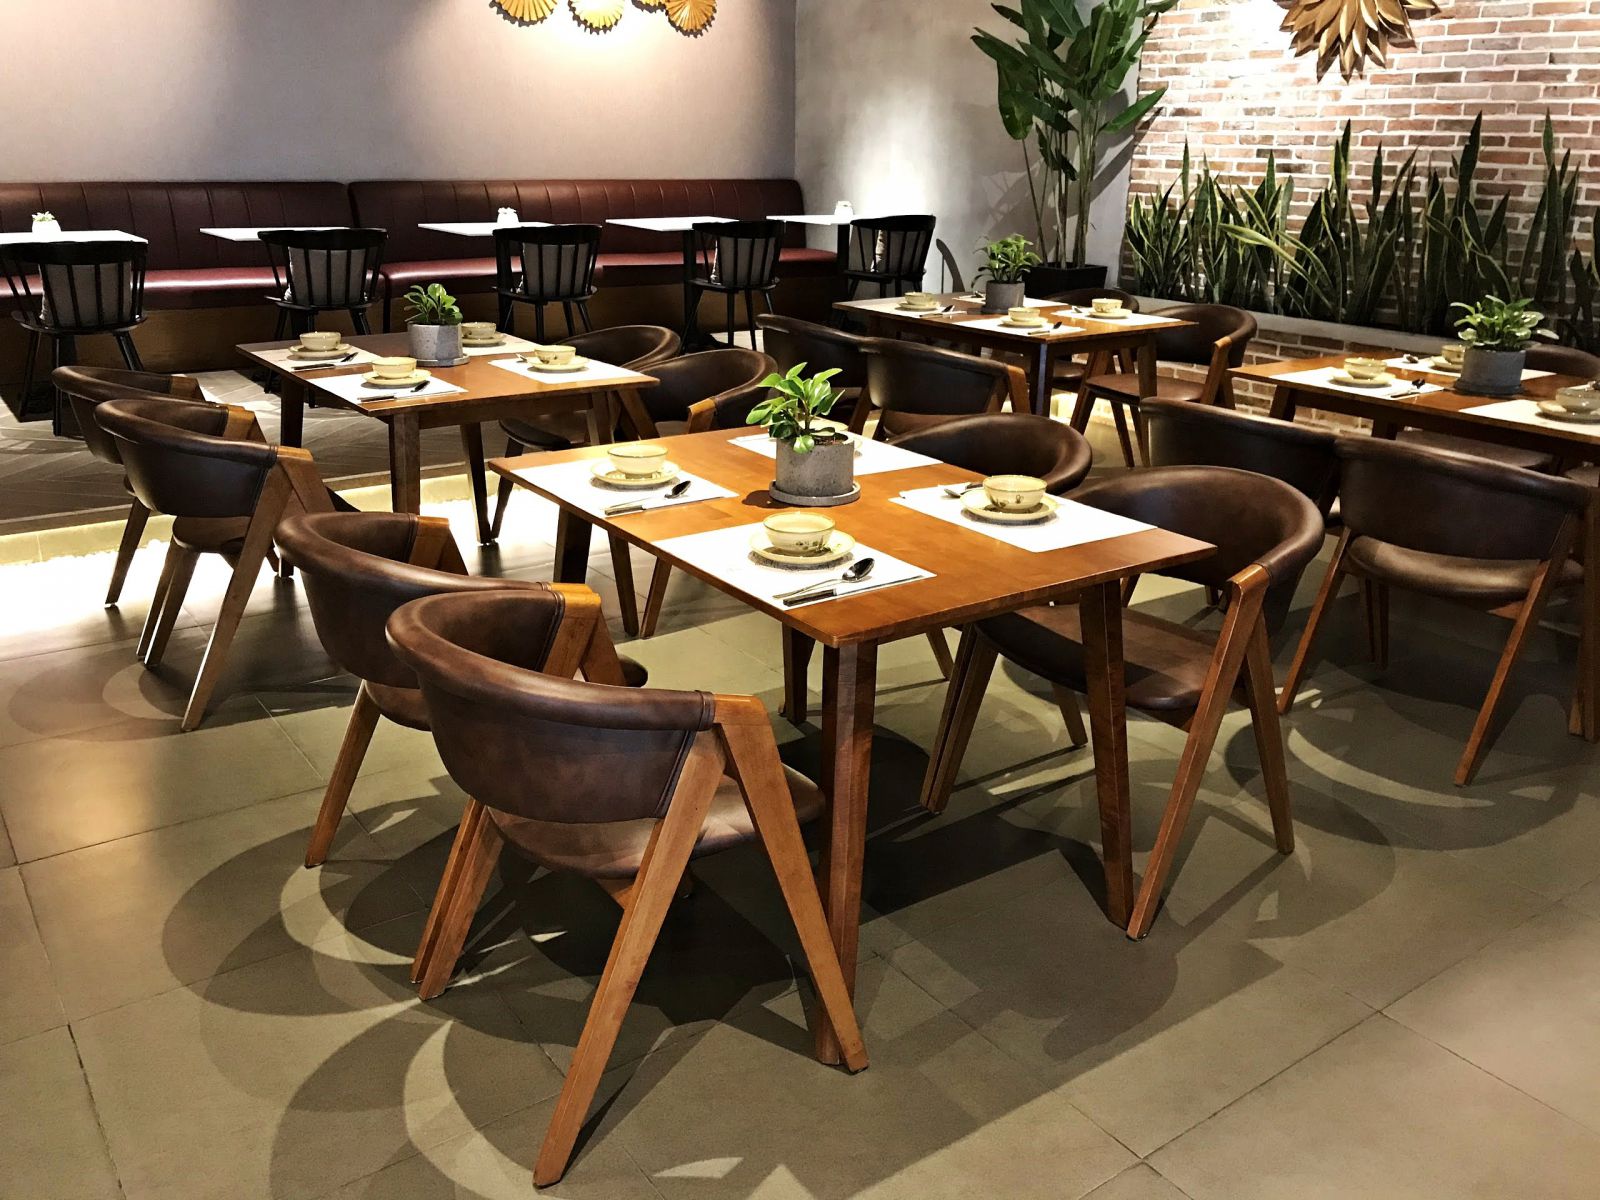 mẫu ghế gỗ mc157 cao cấp trong nội thất nhà hàng chay